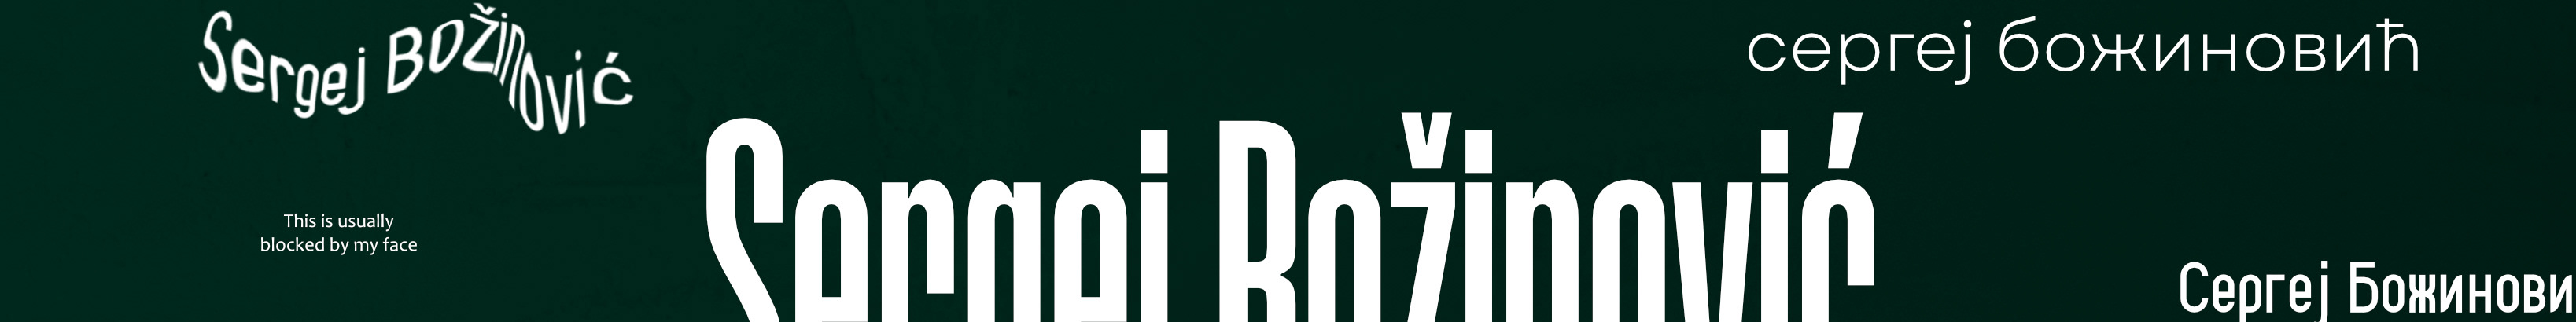 Banner profilu uživatele Sergej Božinović